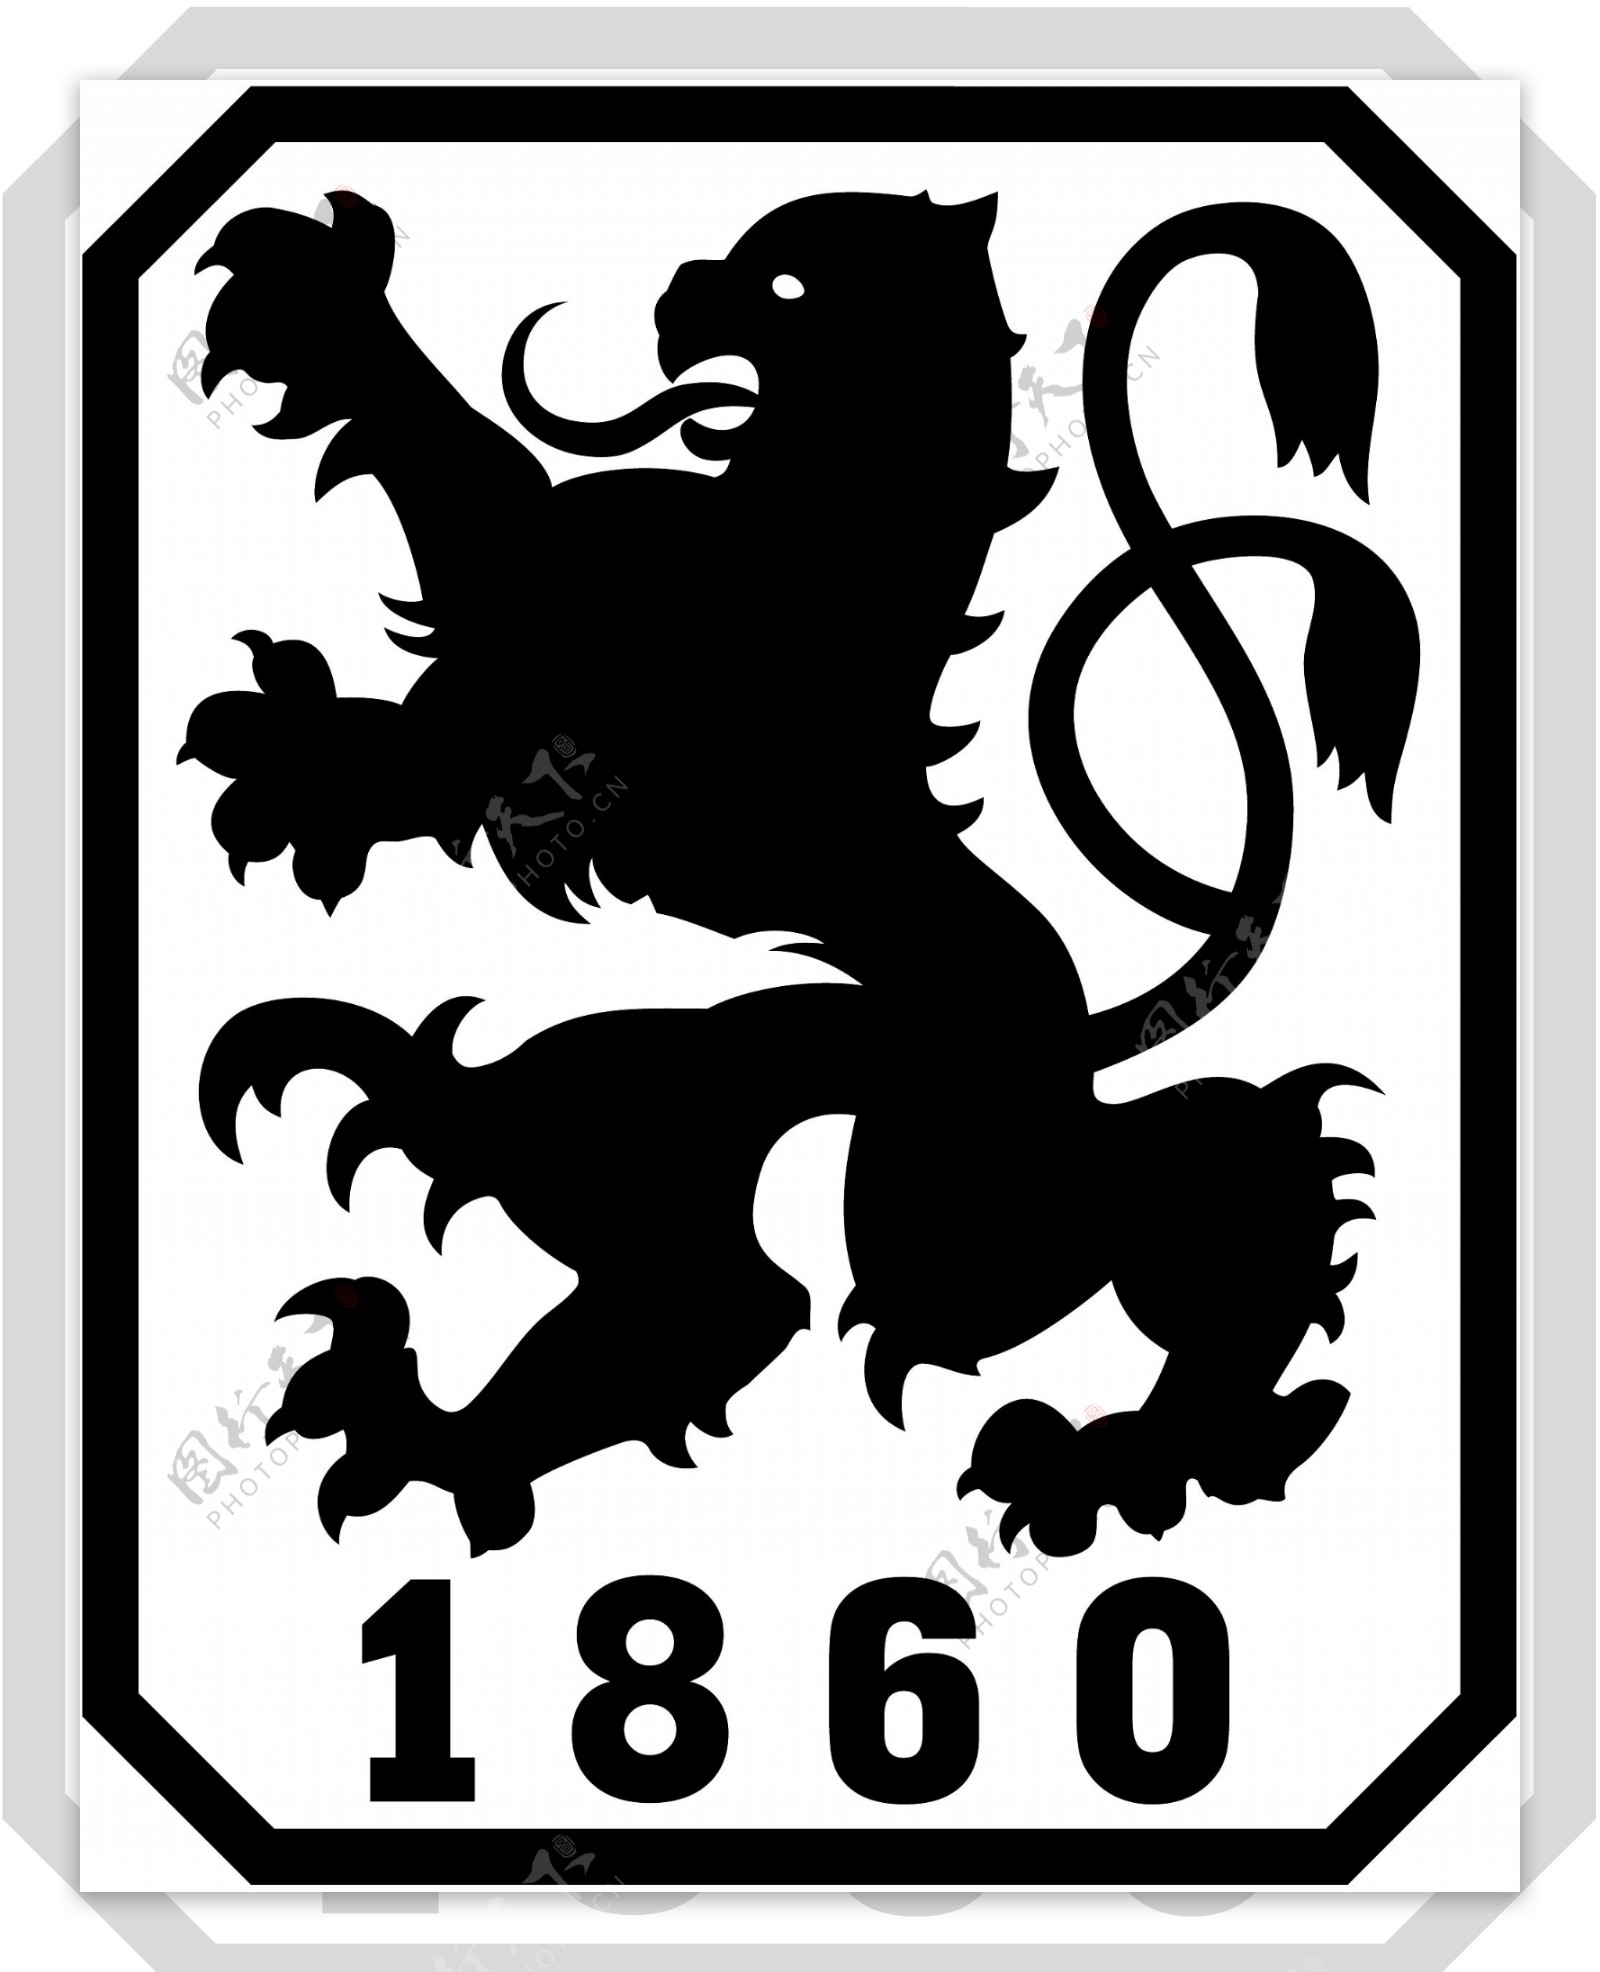 矢量慕尼黑1860足球俱乐部标志